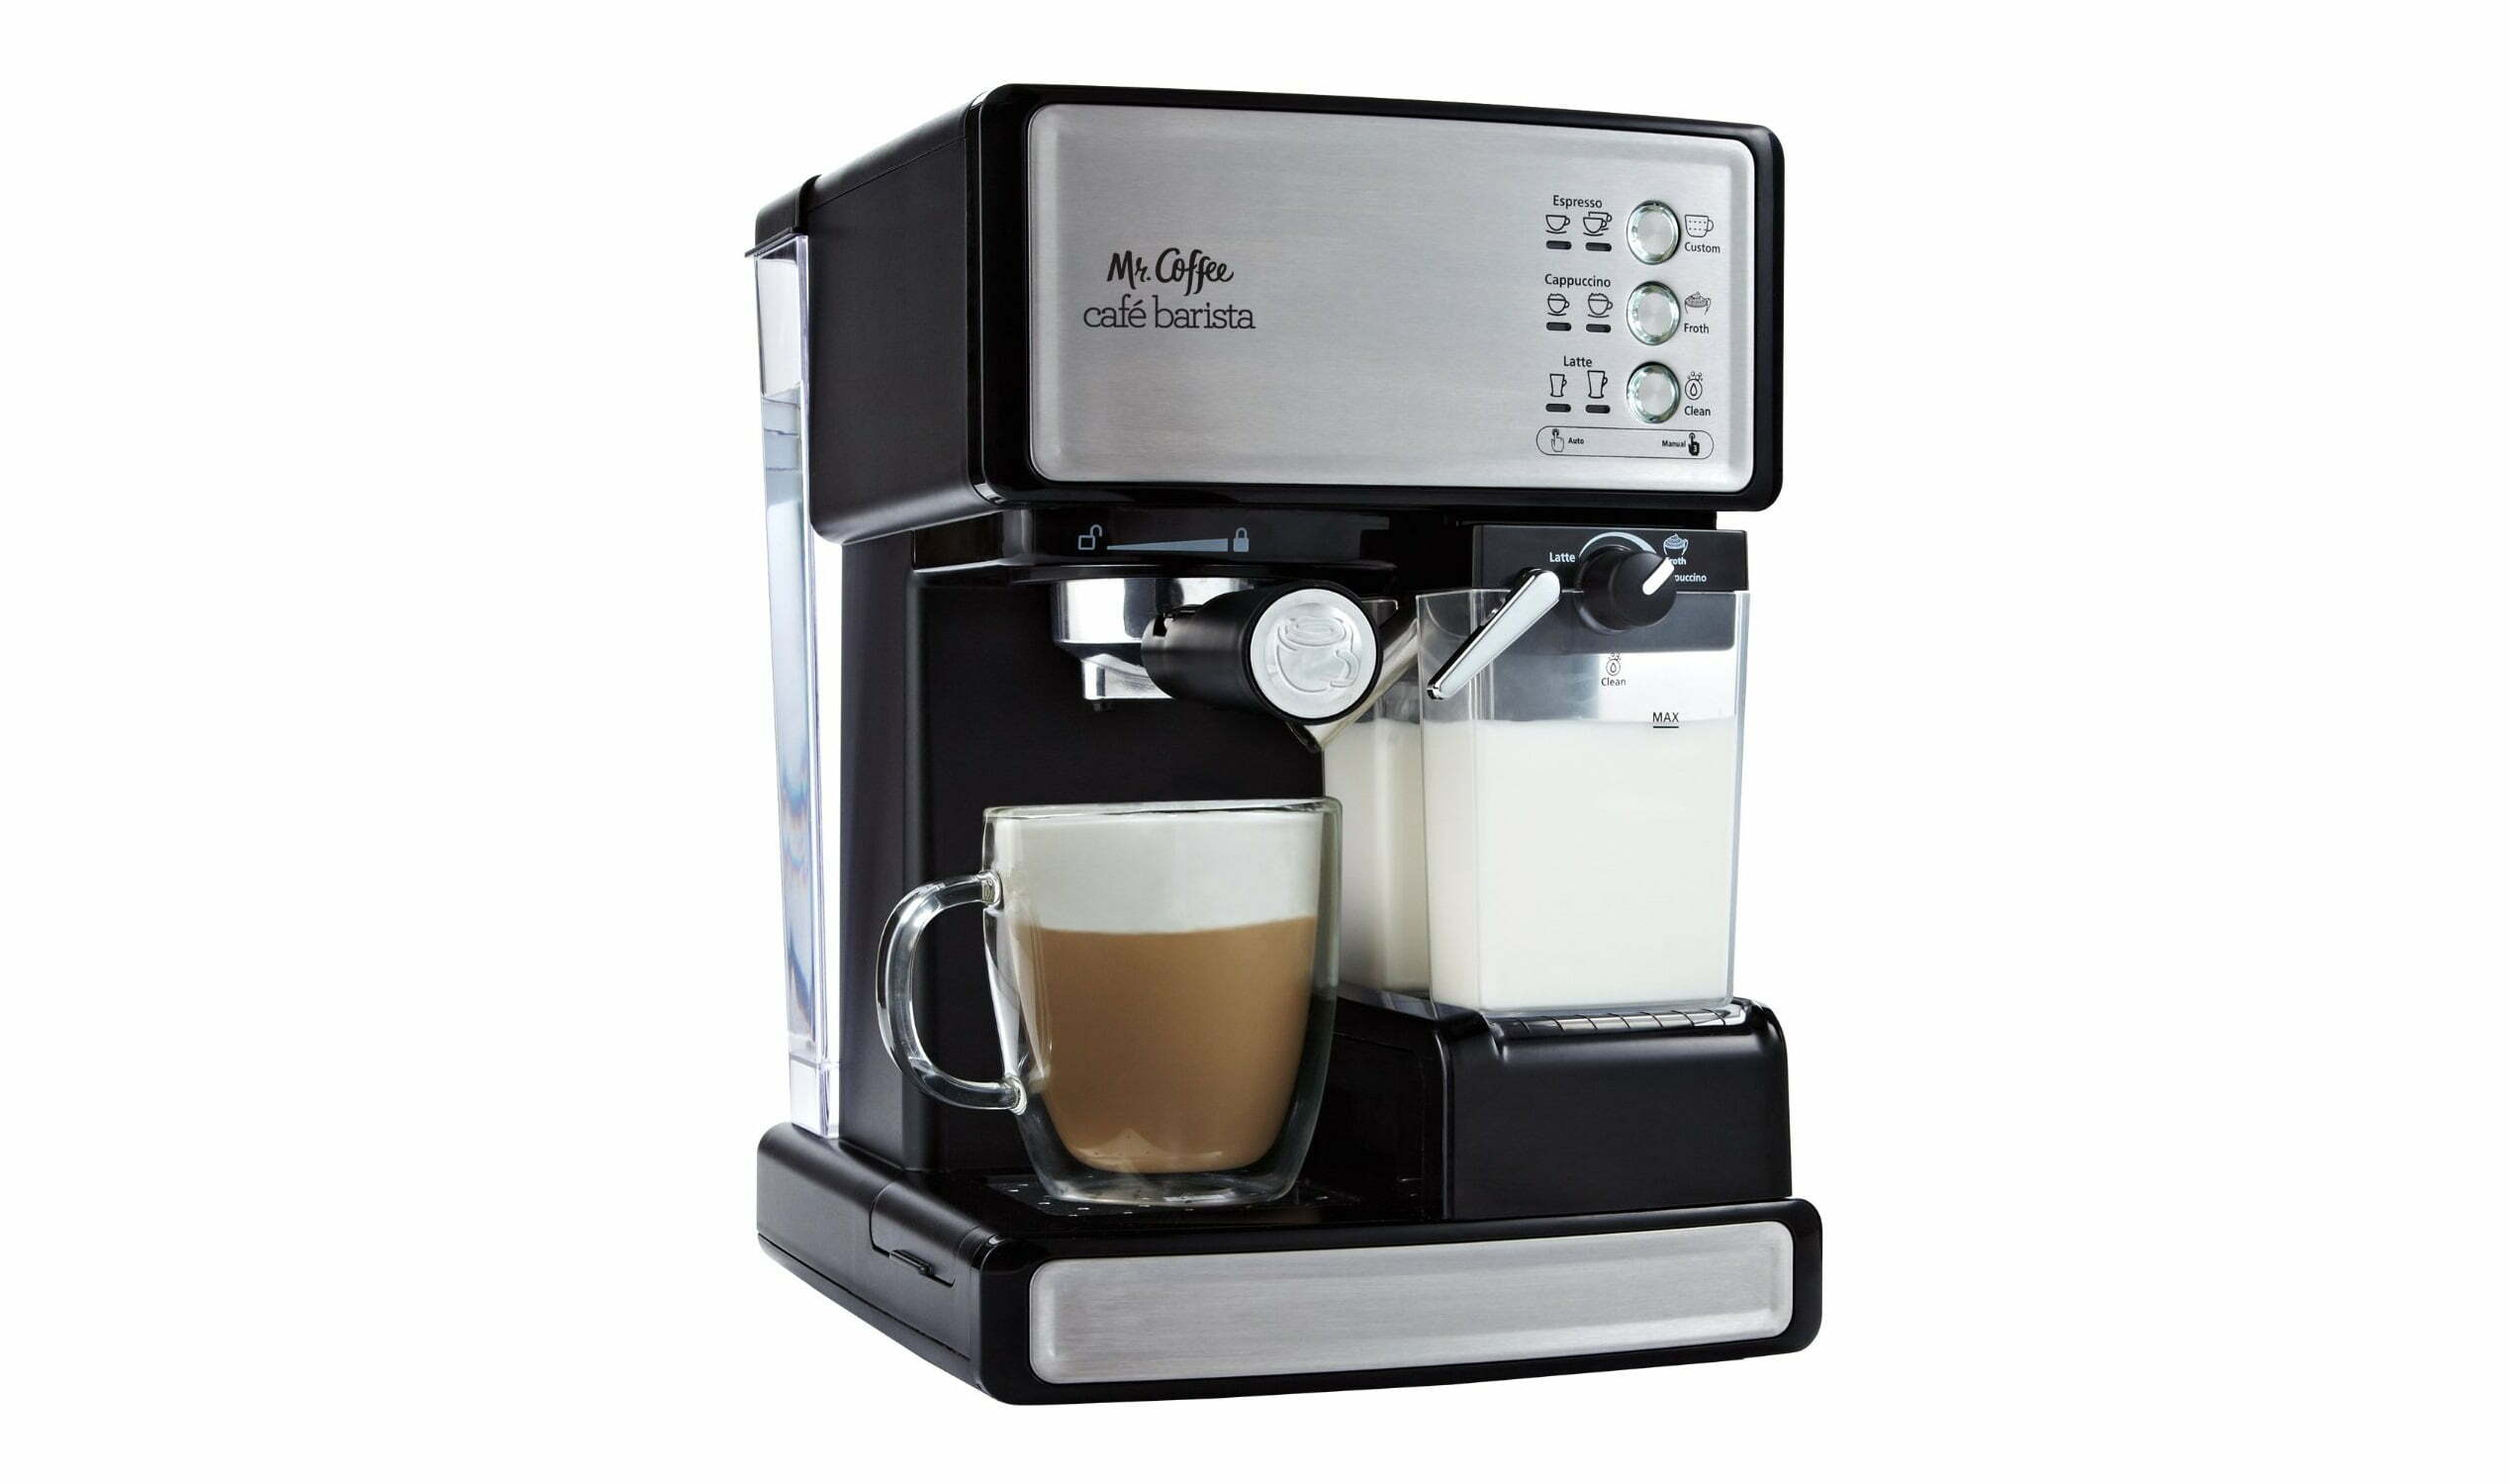 Mr Coffee Cafe Barista Home Espresso - best espresso machine under 100